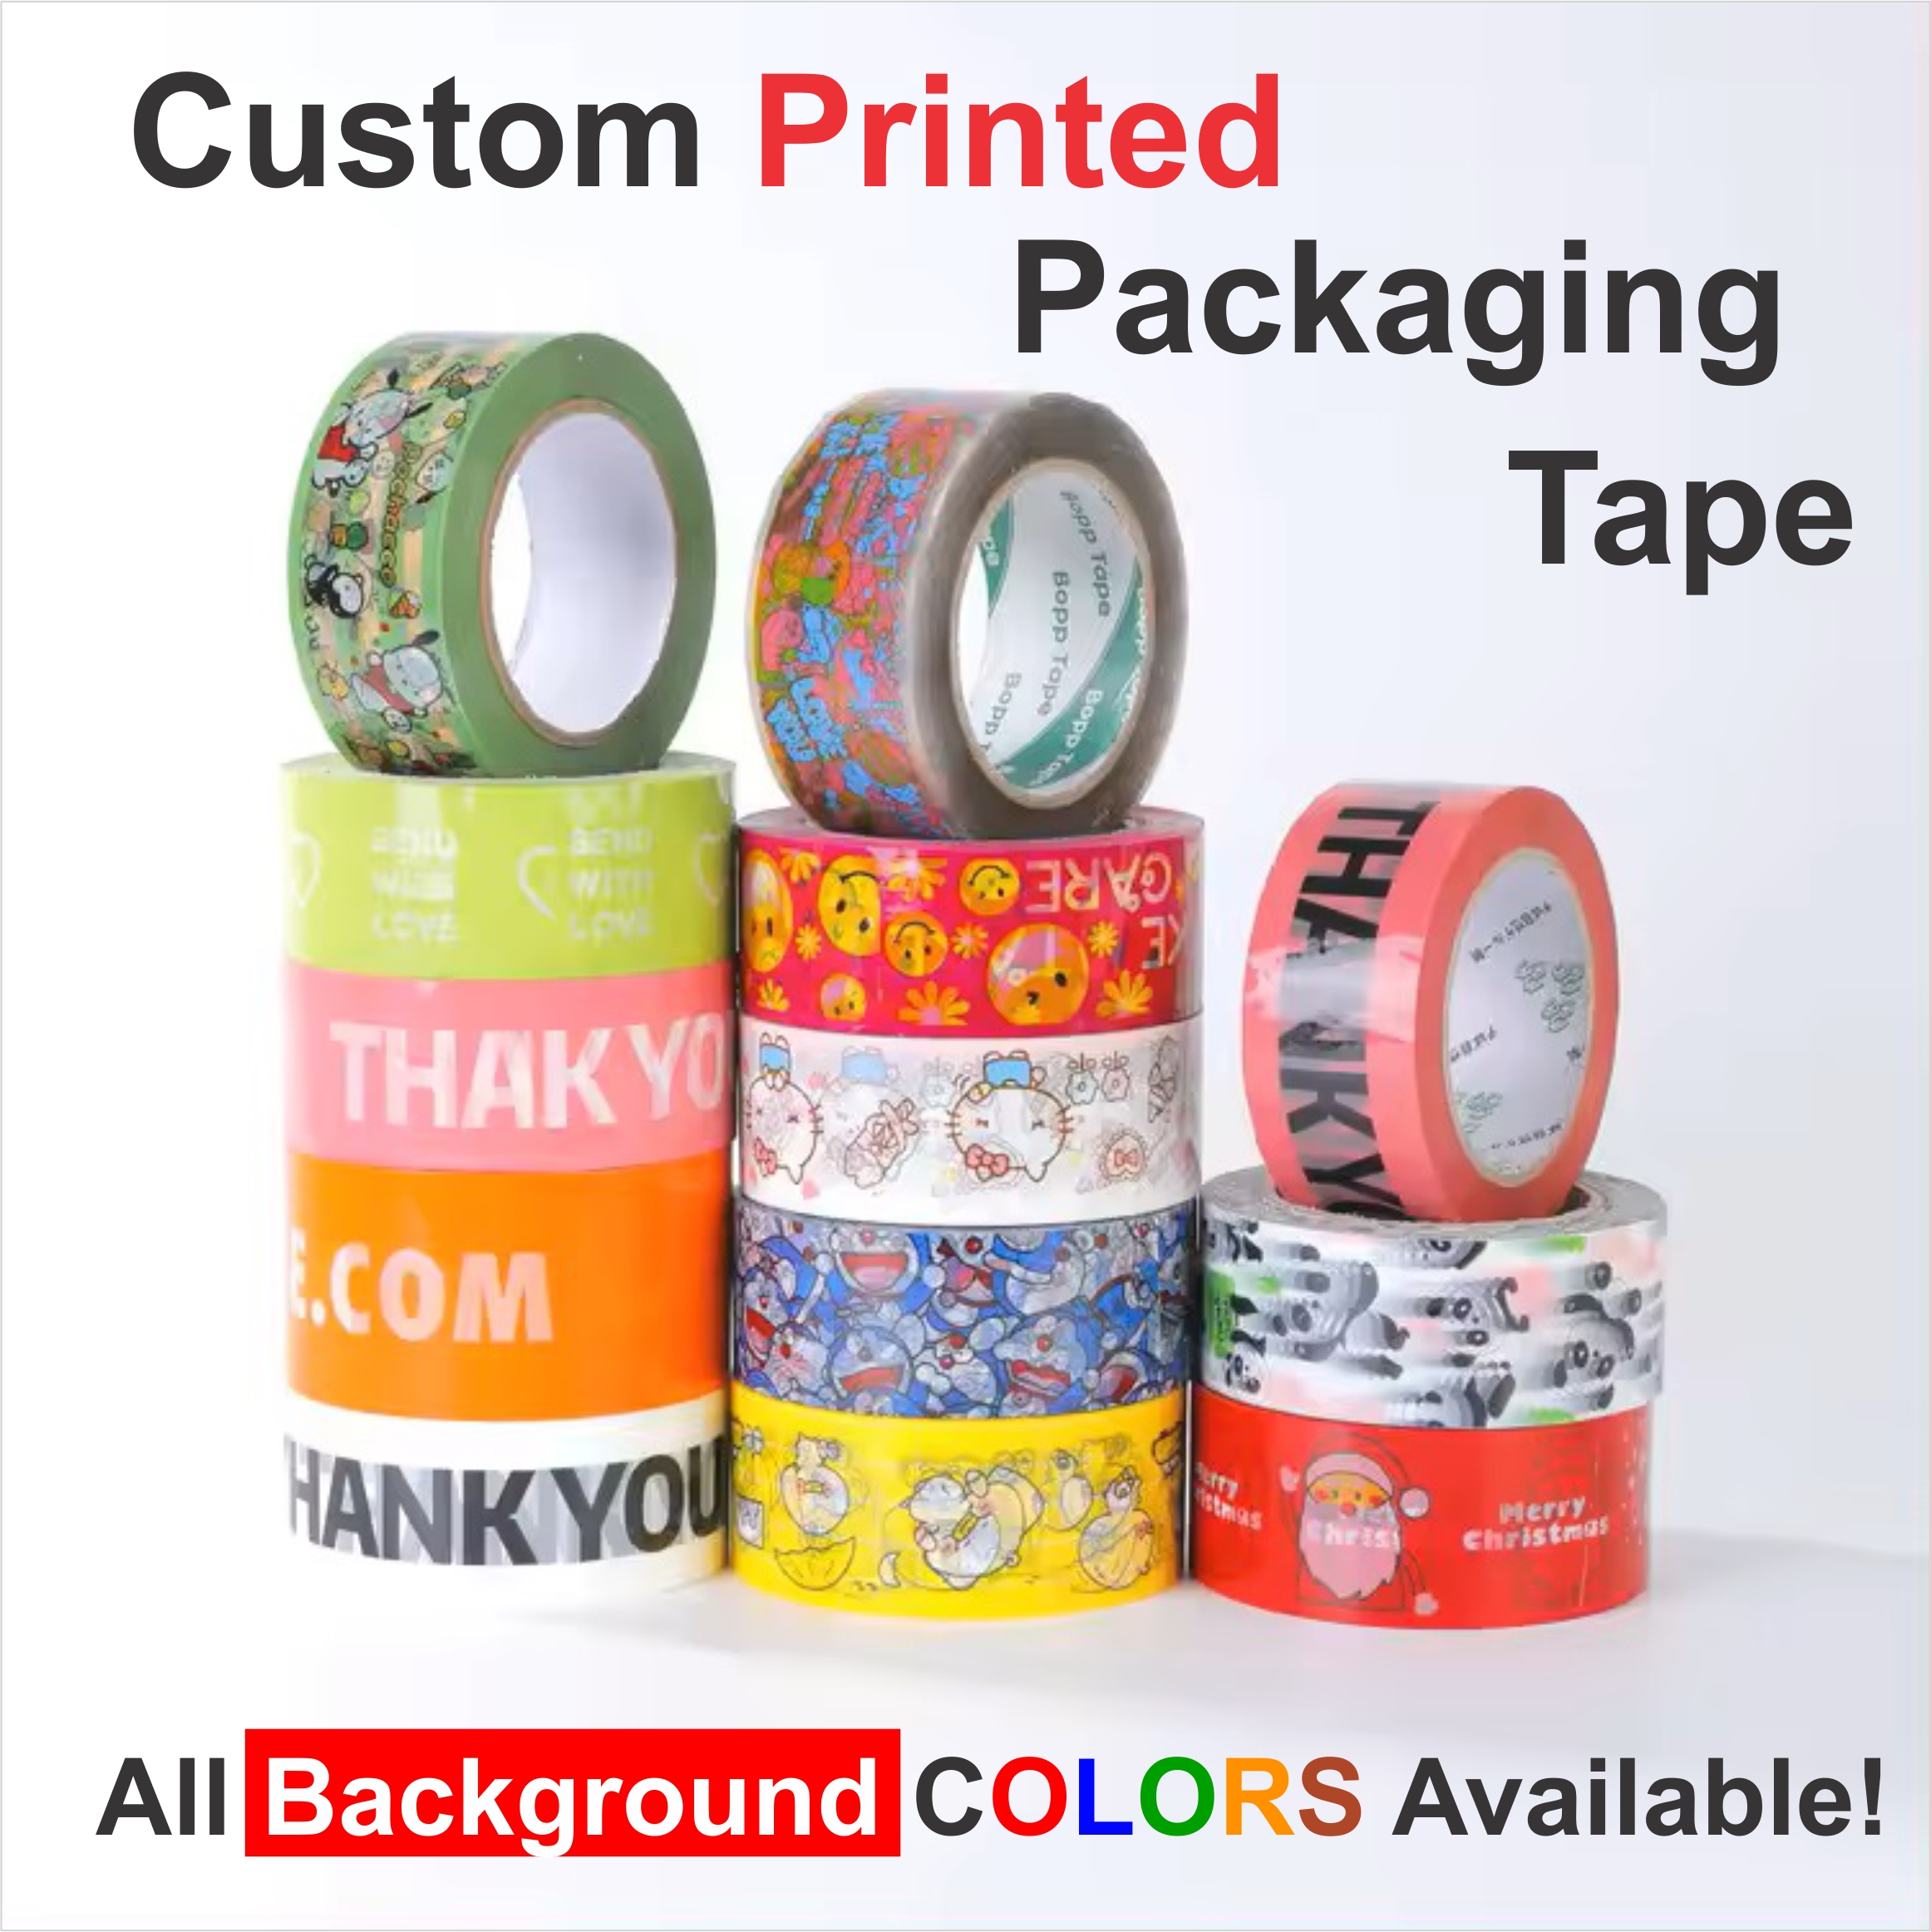 custom printed packaging tape